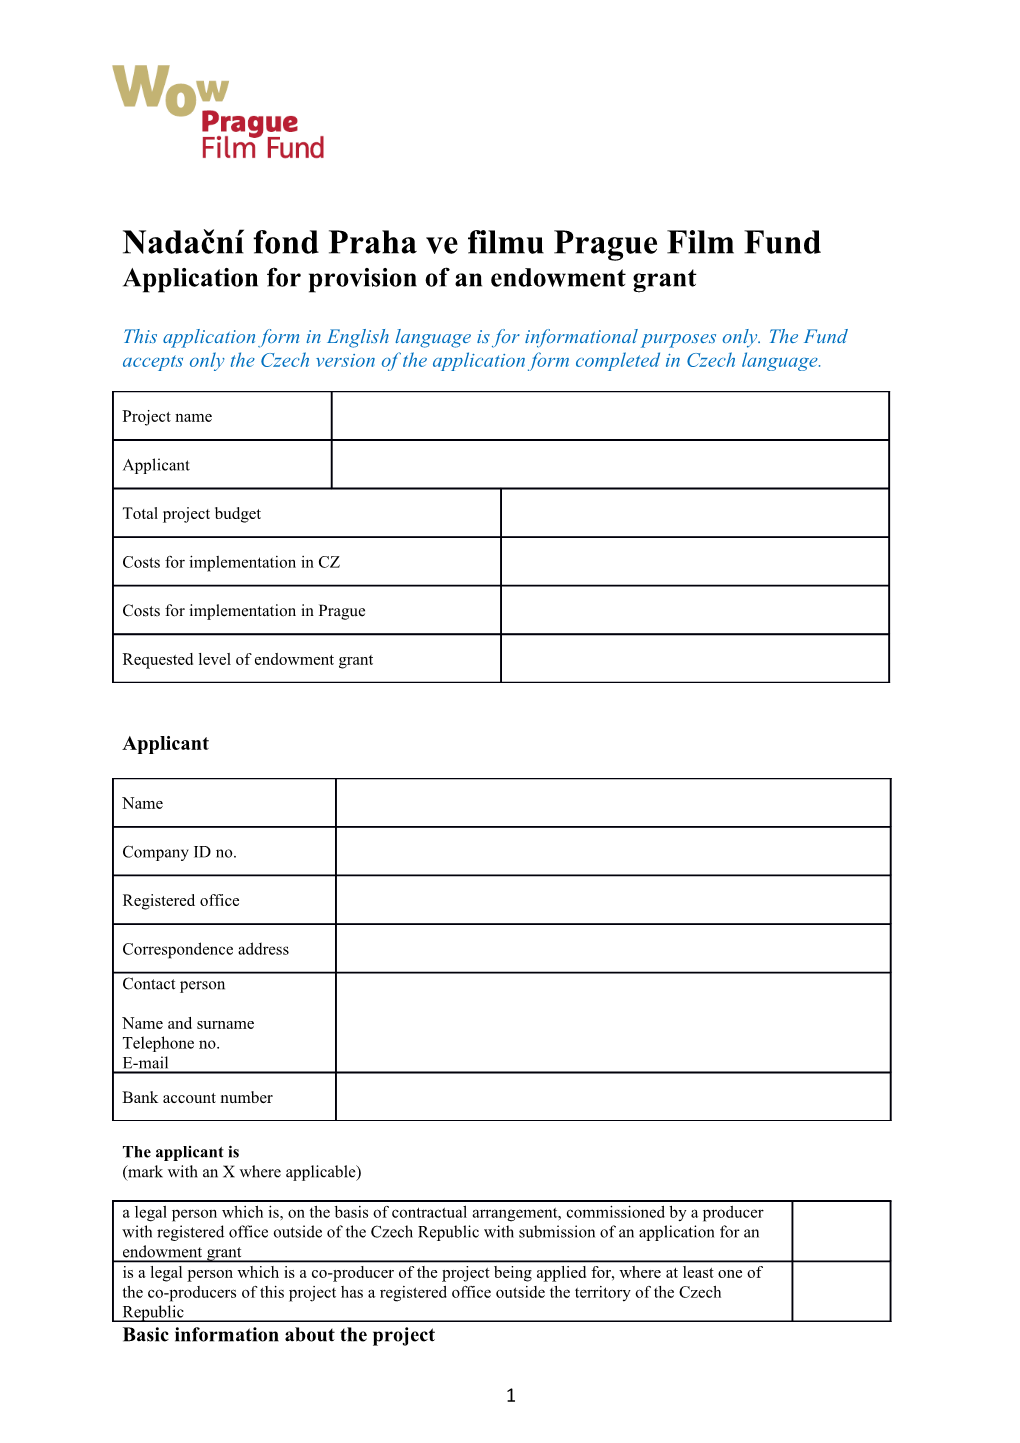 Nadační Fond Prahave Filmu Prague Film Fund